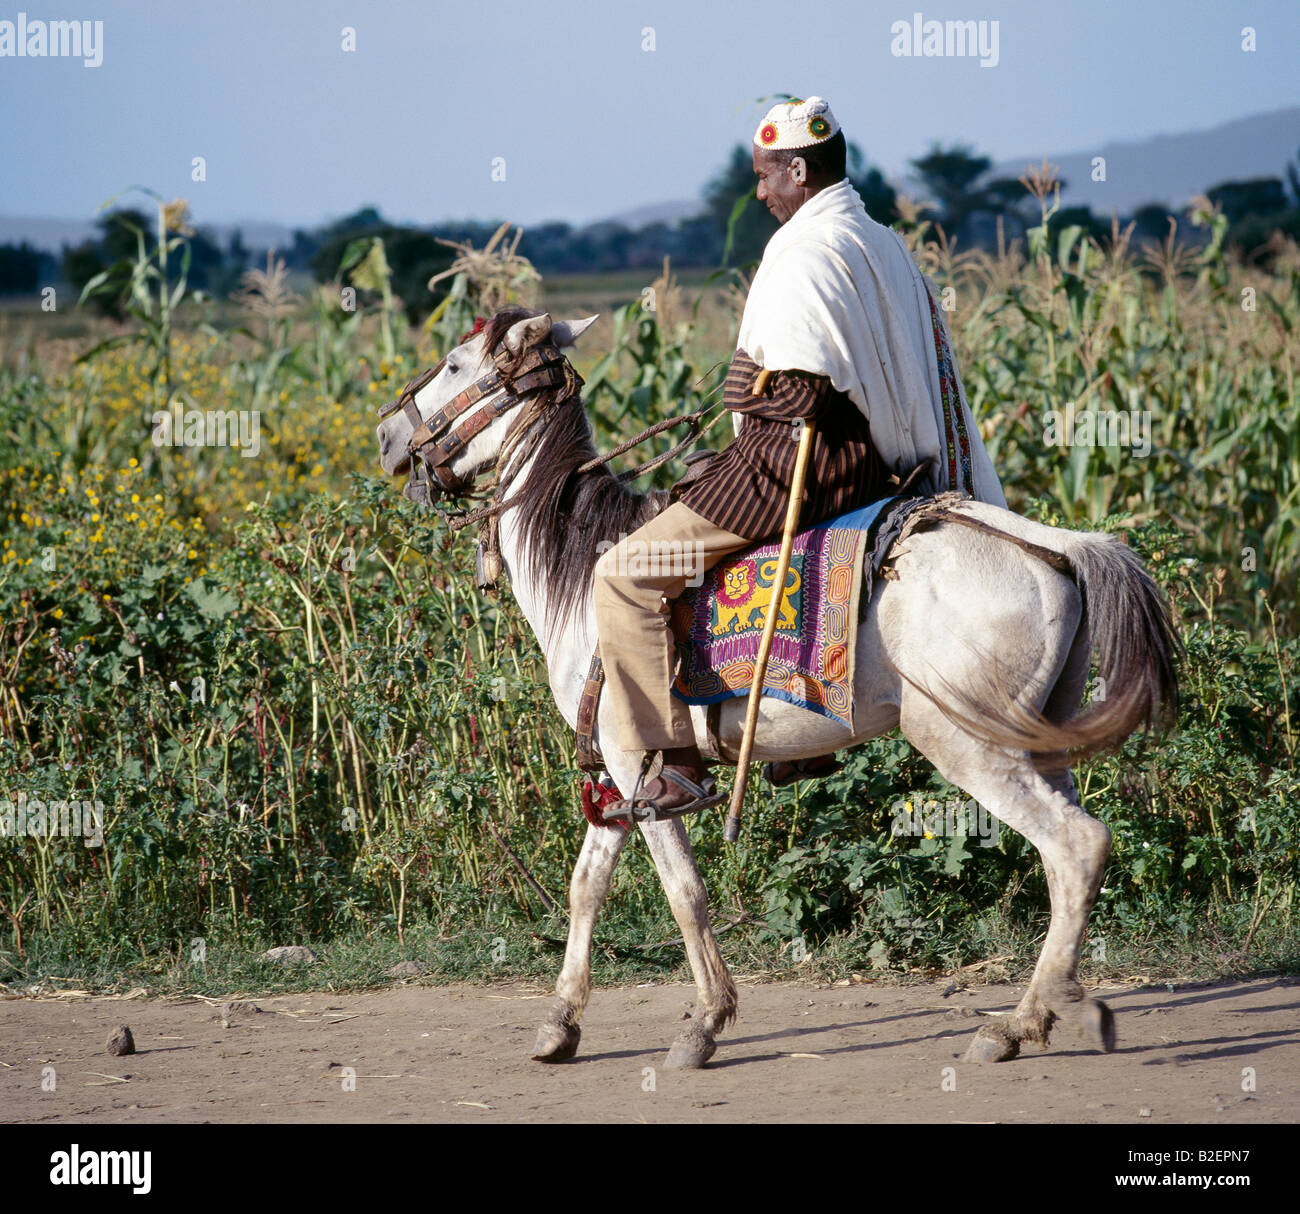 Un homme sur son marché à tours-caprisoned gaiement poney. Son saddlecloth est brodé avec l'Ethiopie impériale du lion. Banque D'Images